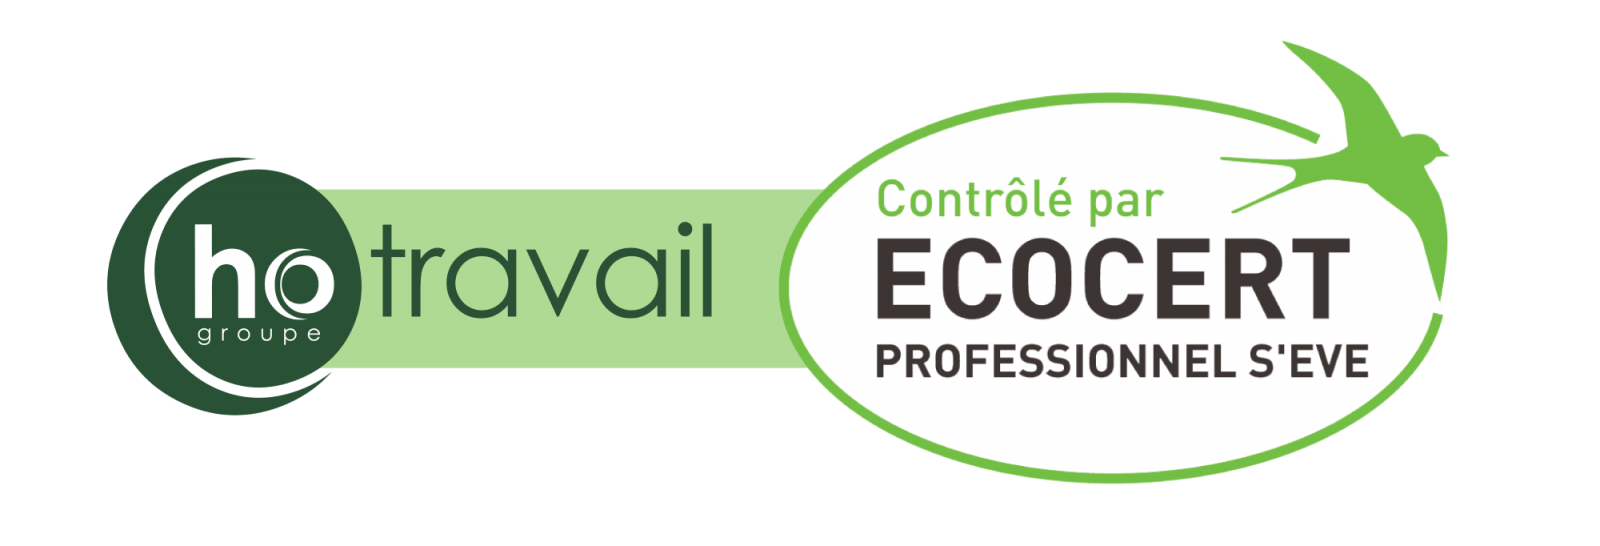 Labellisation Ecocert Hotravail Entretien des espaces verts